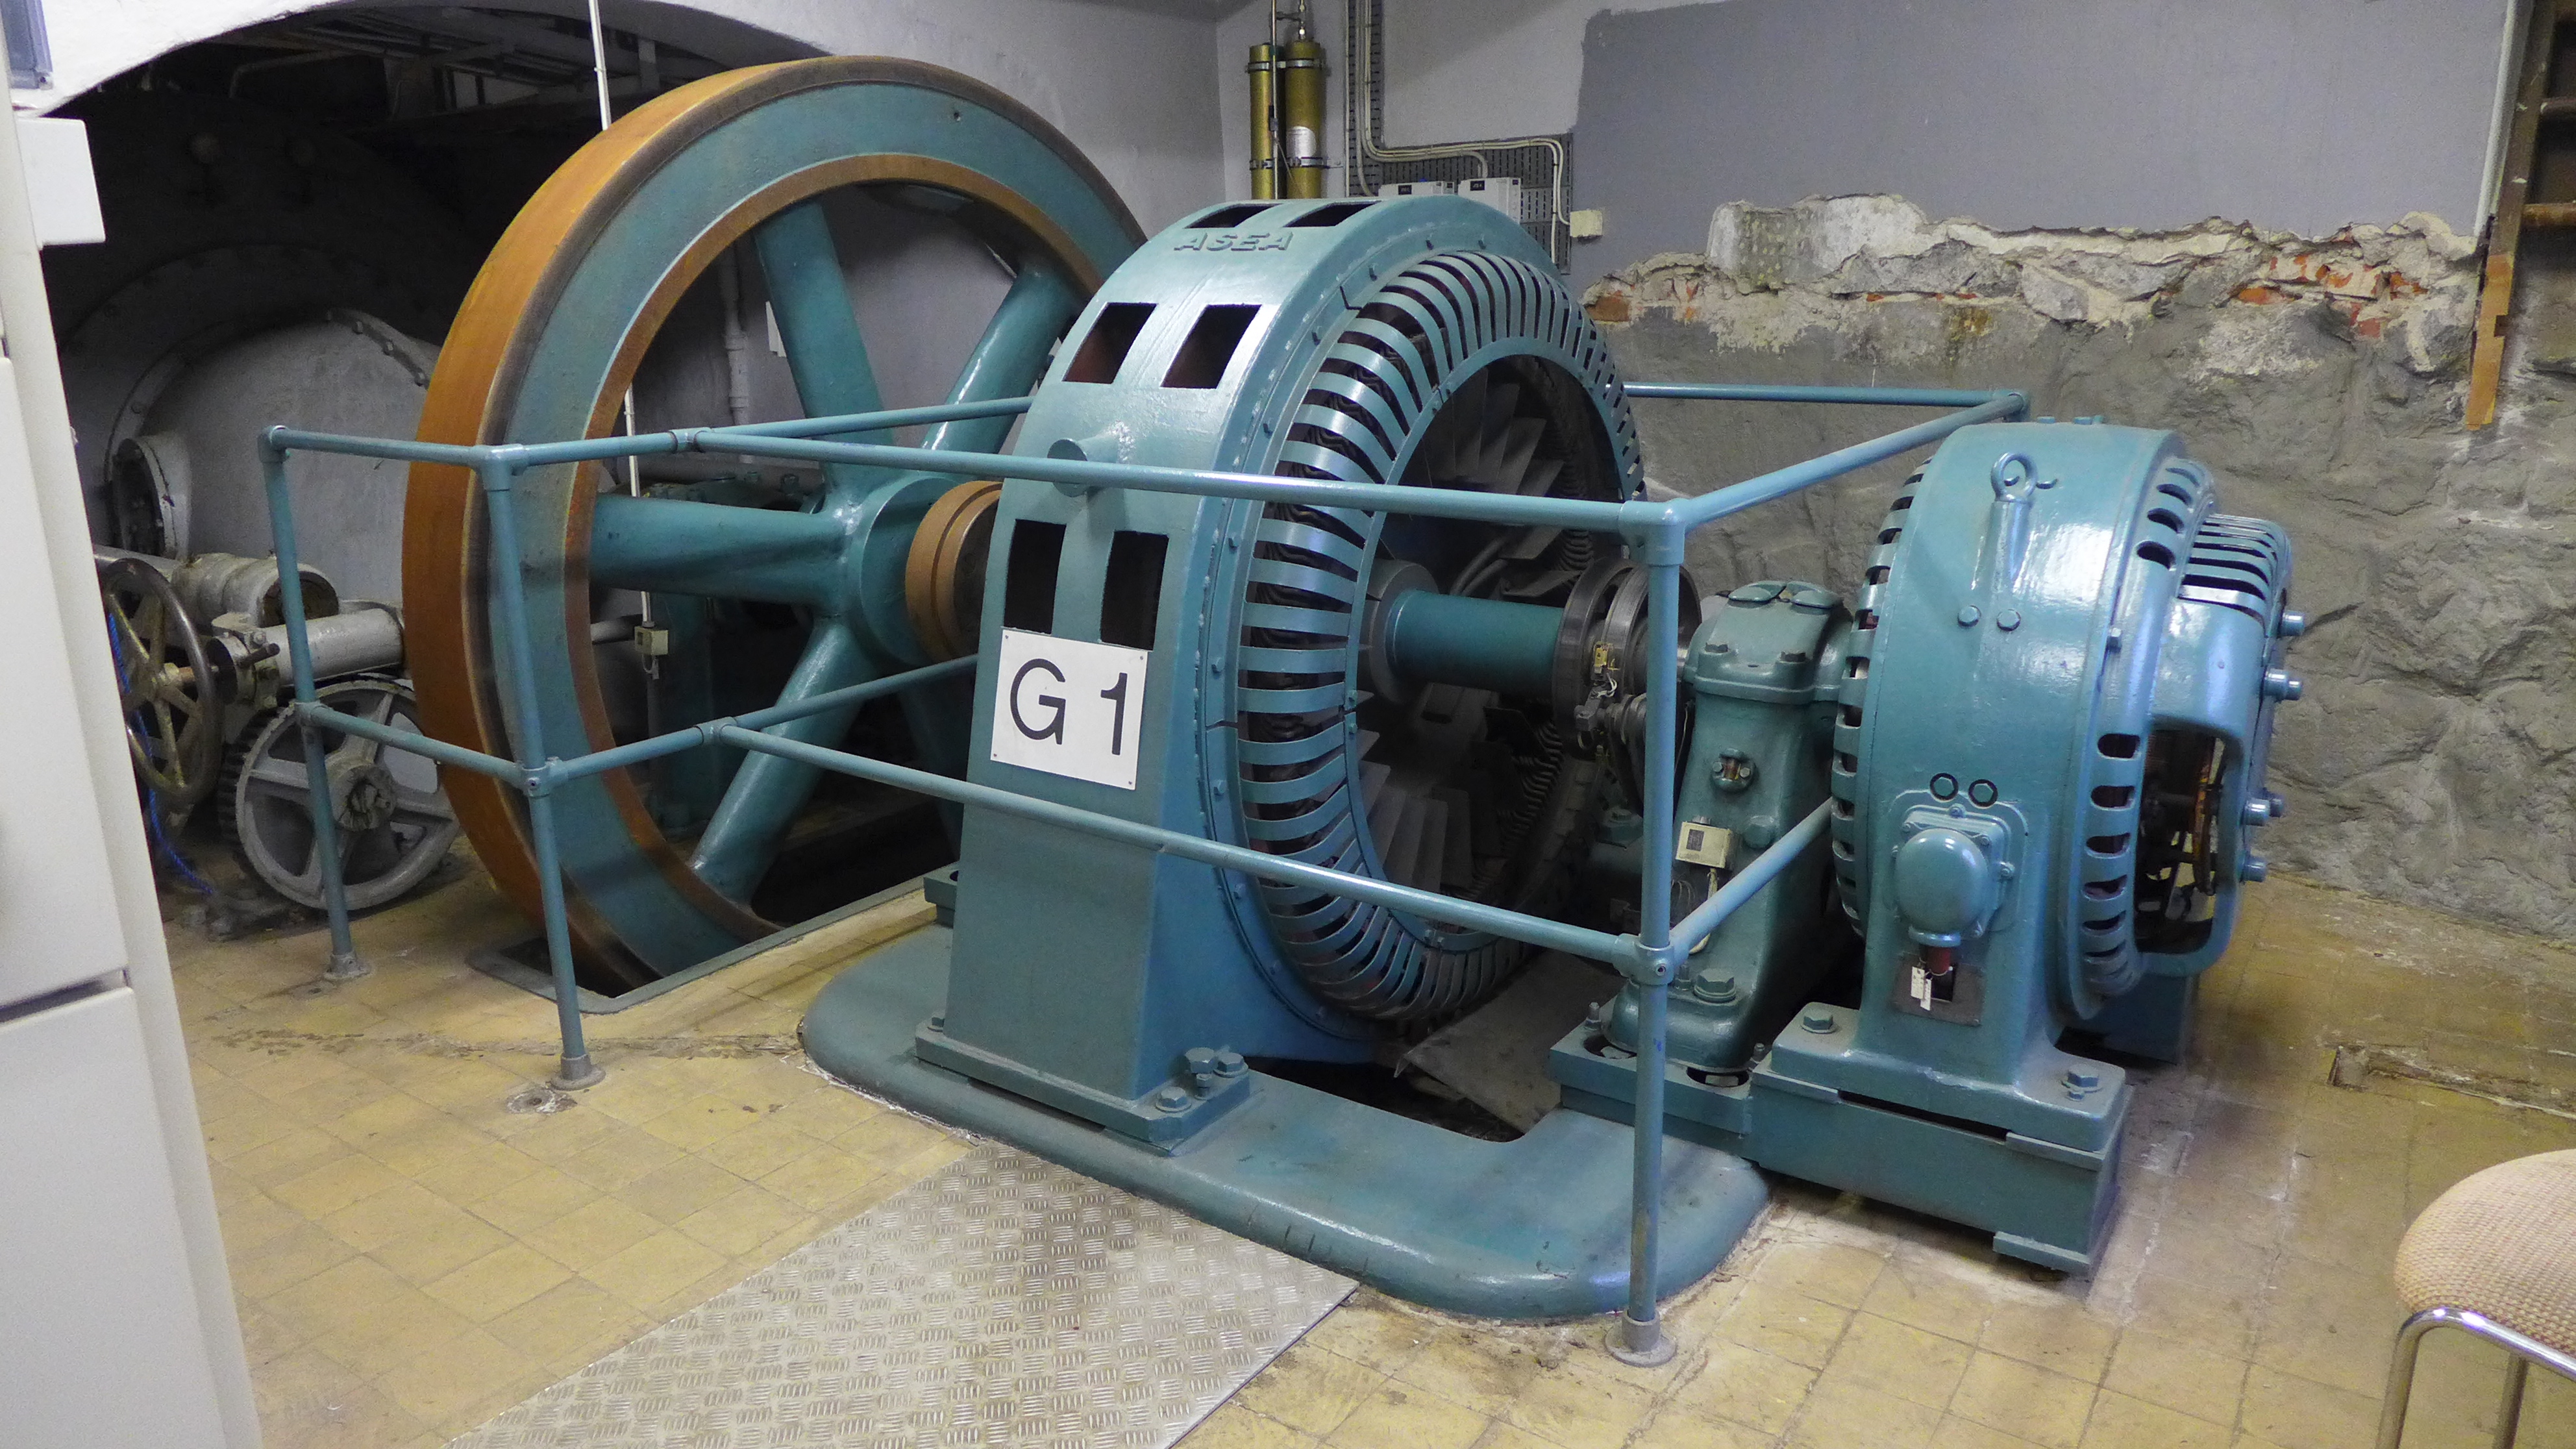 Strömbergets kraftverk har en dubbel francisturbin, tillverkad 1920 av Kristinehamns mekaniska verkstad.
Turbinen har en liggande axel som driver en synkrongenerator Asea. Mataren finns kvar men är tagen ur drift.